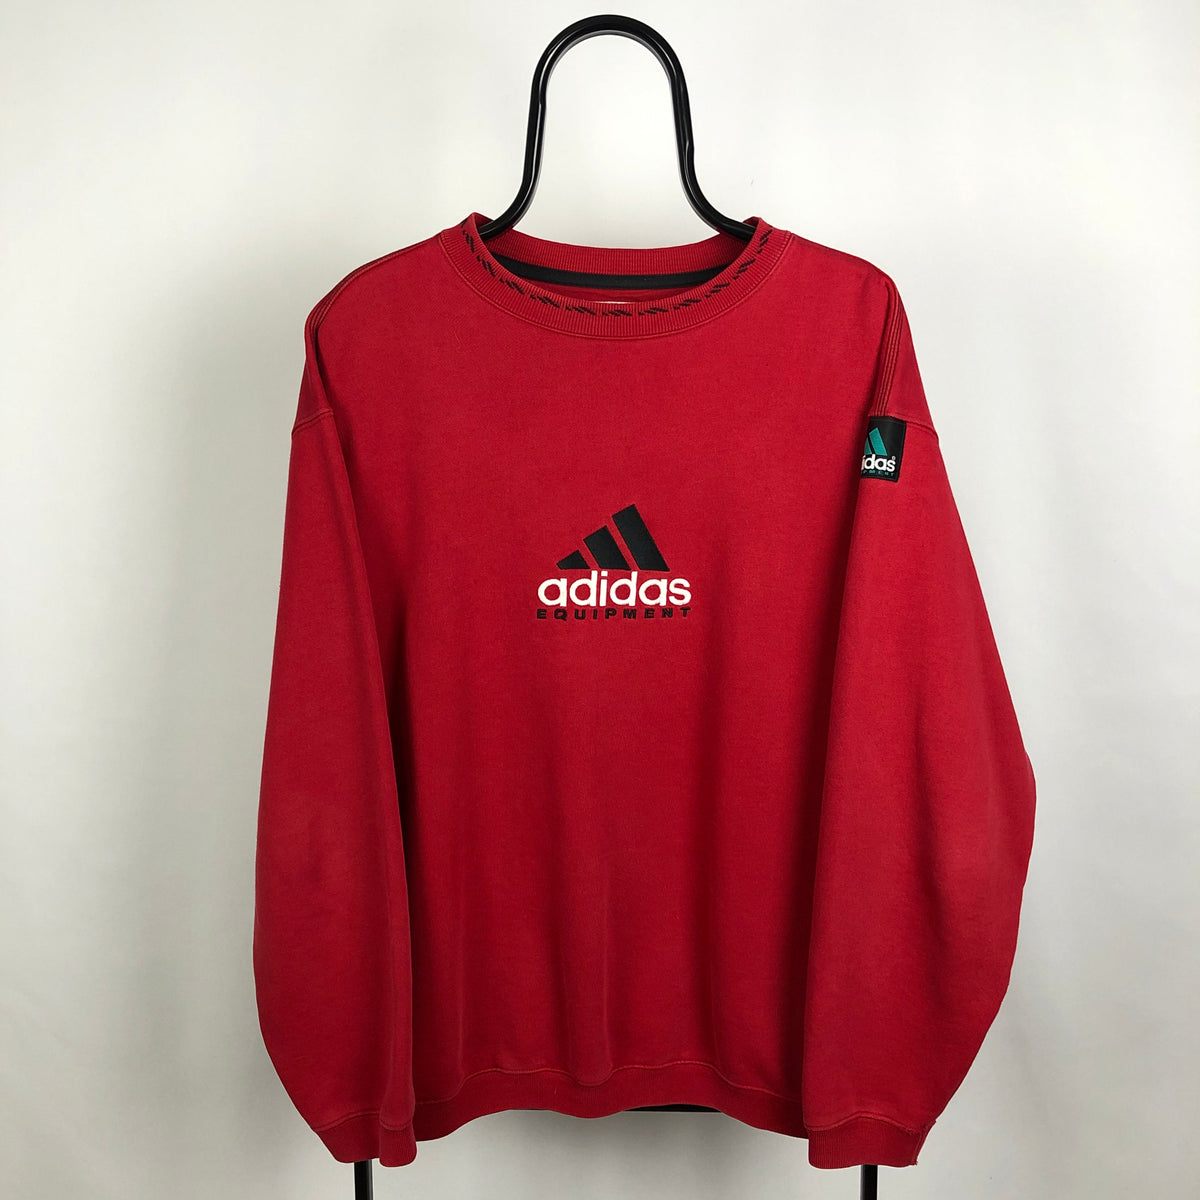 Vintage 90s Adidas Equipment Sweatshirt in Red - Men's Large/Women's X ...